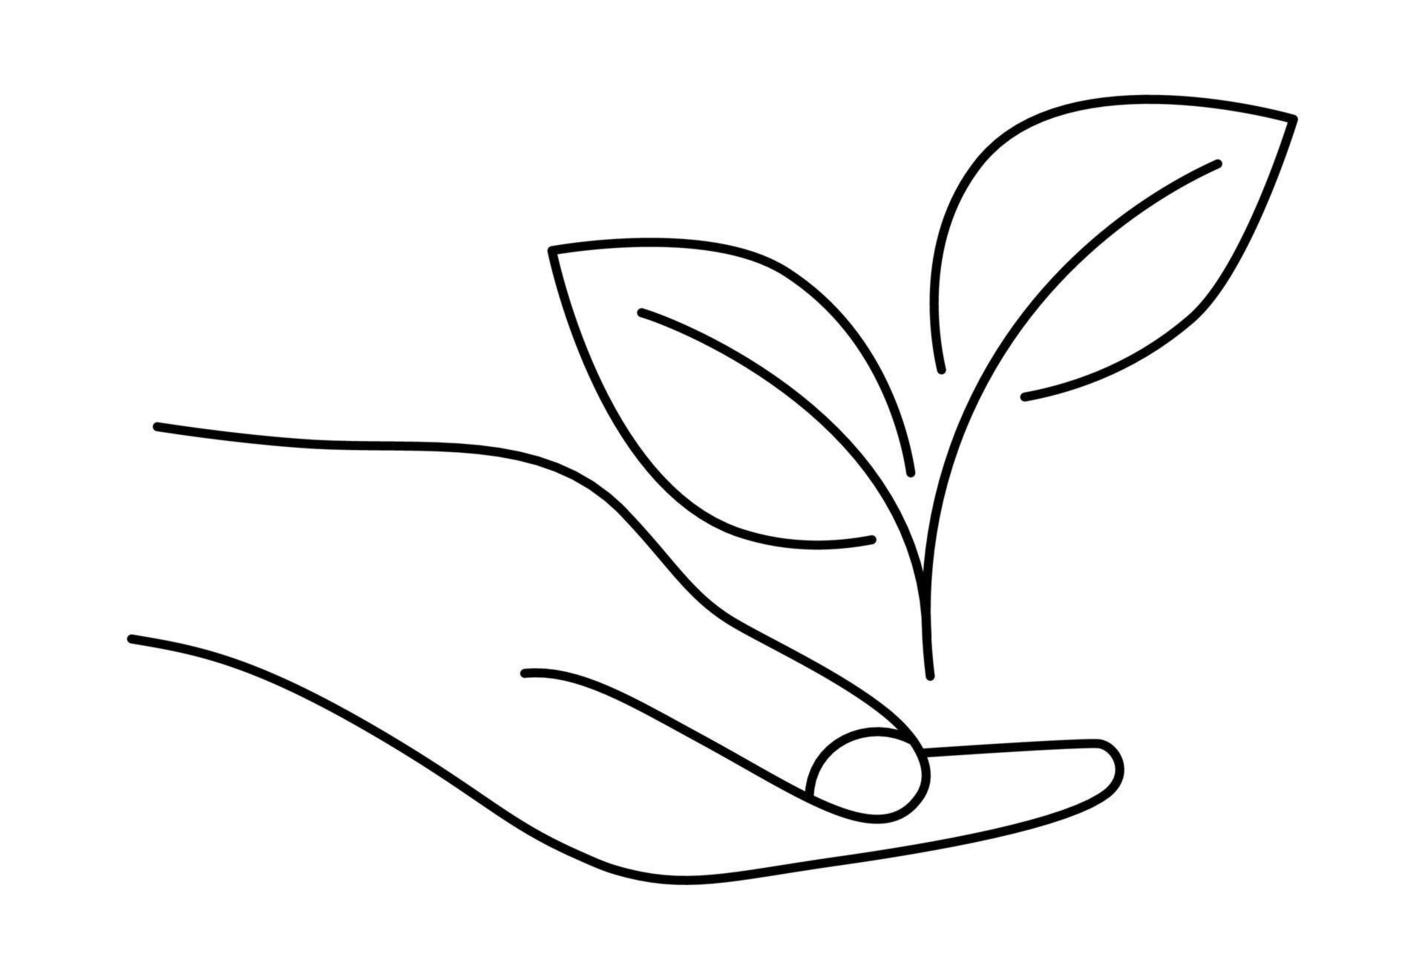 wachsende Blätter in der Hand. Hand geben mit junger Pflanze im Boden. kann für natürliche landwirtschaftliche Produkte, Bio-Lebensmittel, vegane Produkte verwendet werden. Tag der Erde Konzept. Umweltschutzkonzept vektor